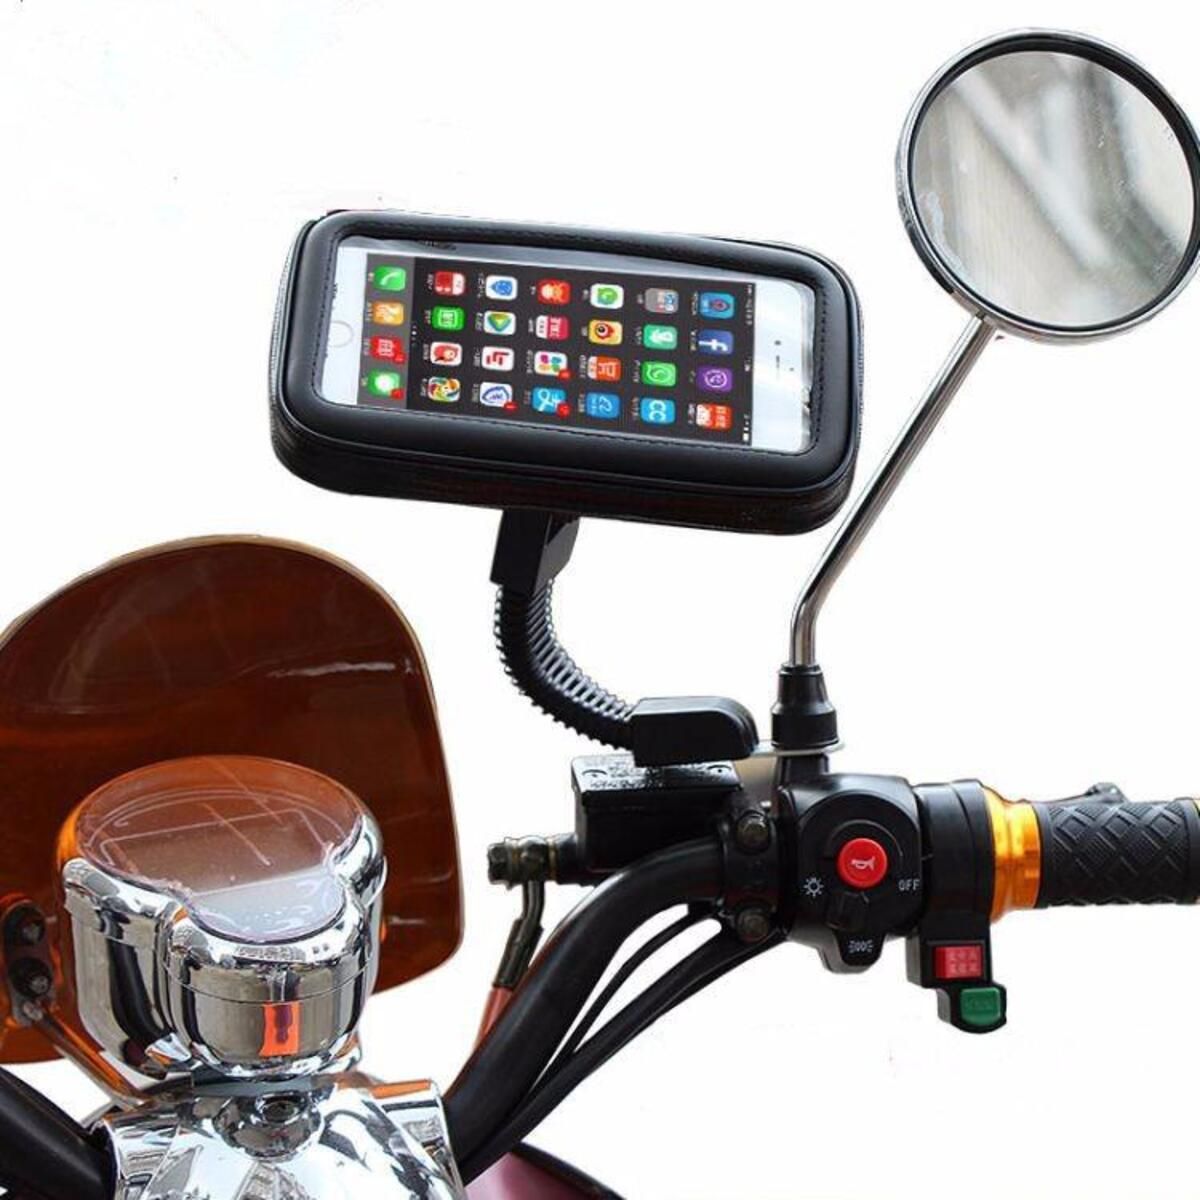 OEM Avantree Motosiklet Telefon Tutucu Large